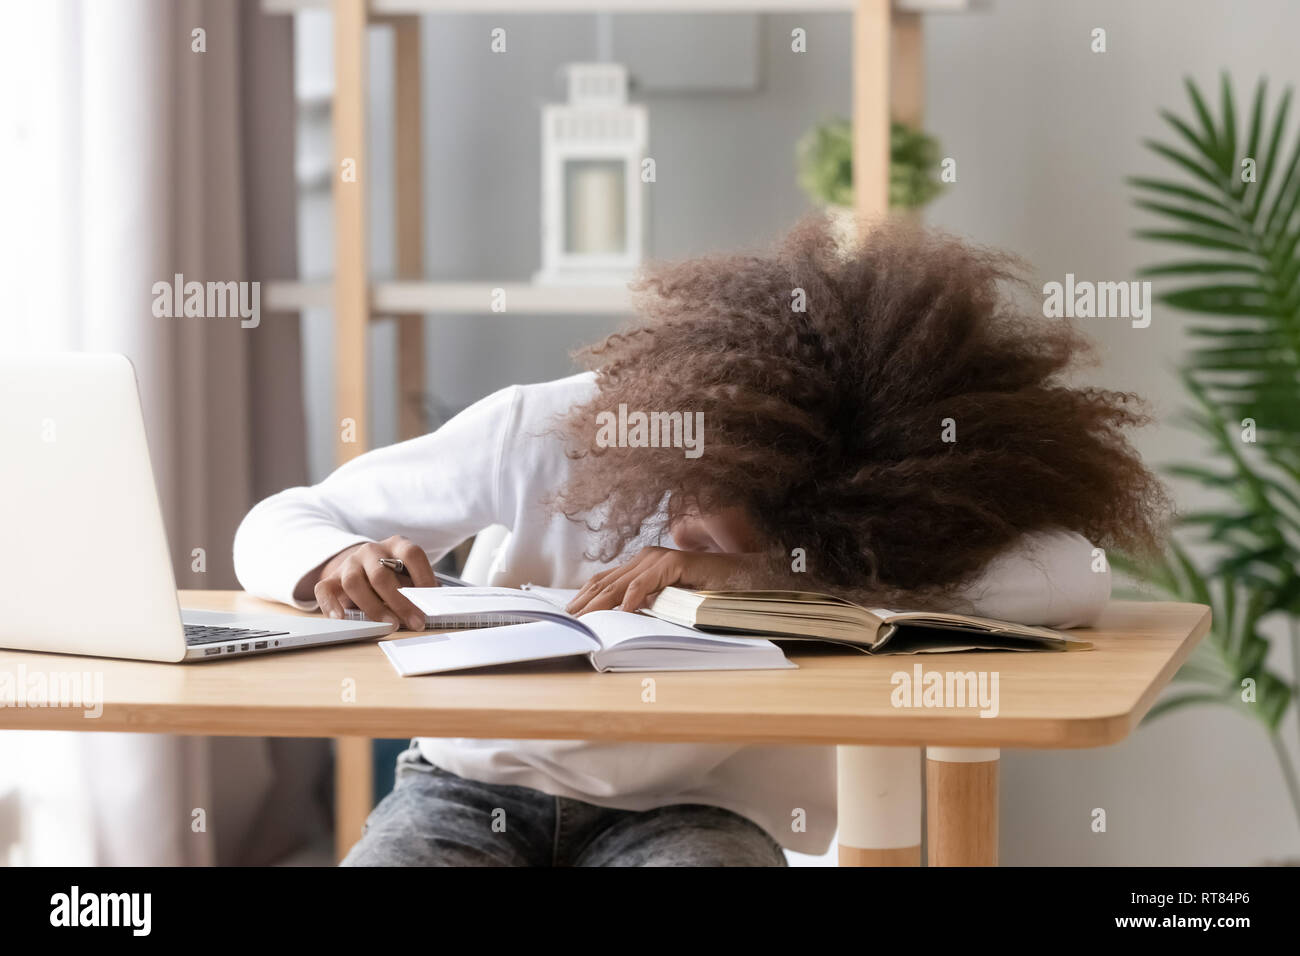 Couchage d'écolière sitting at desk in classroom au cours de l'étude Banque D'Images